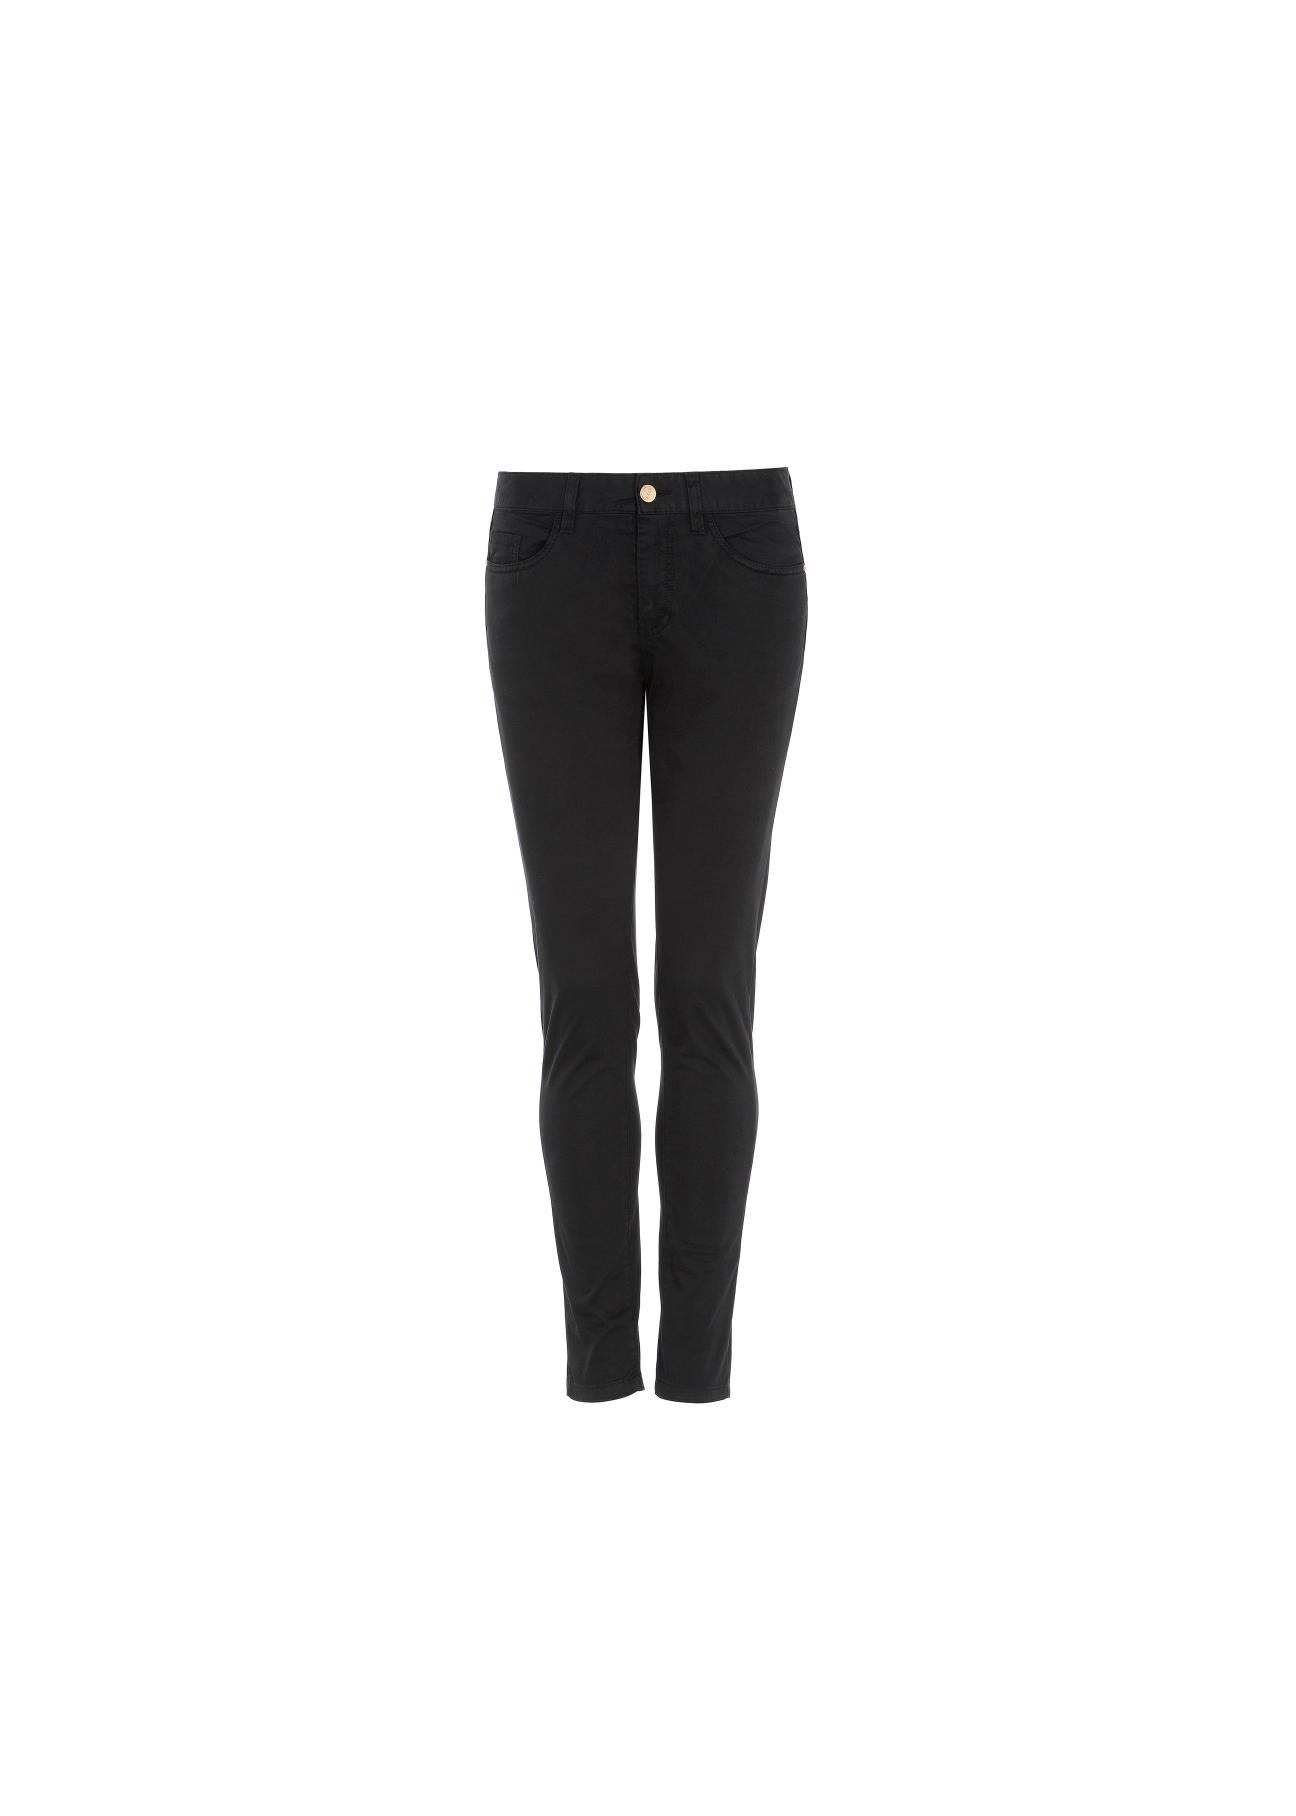 Czarne spodnie skinny damskie SPODT-0026-99(W20)